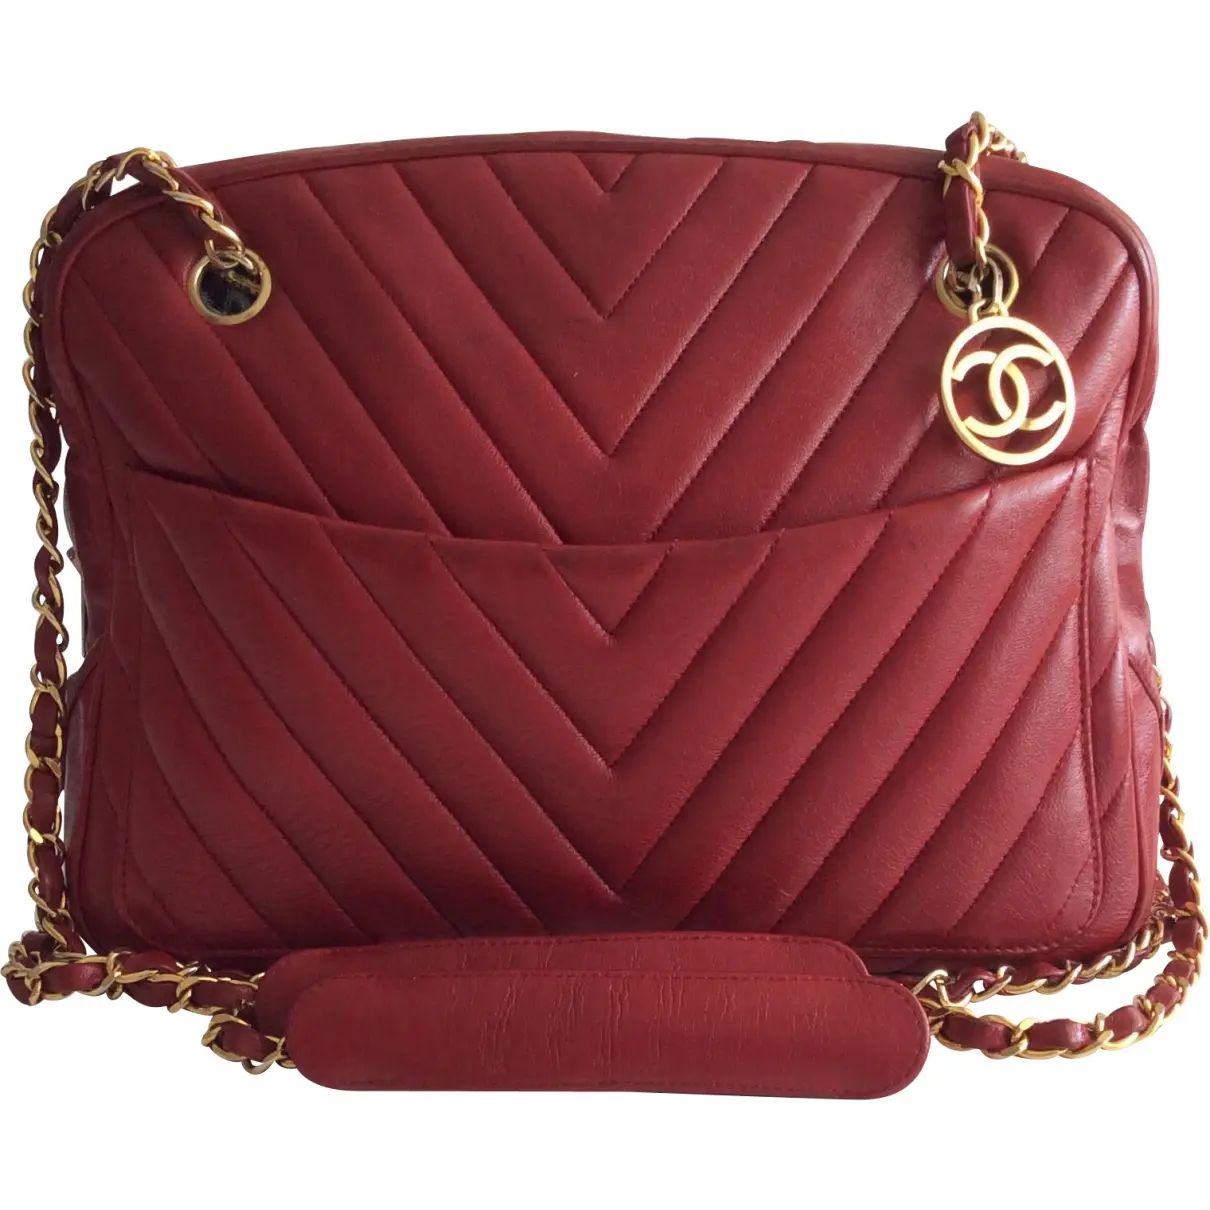 Red Leather Handbag Camera Chanel - Vintage